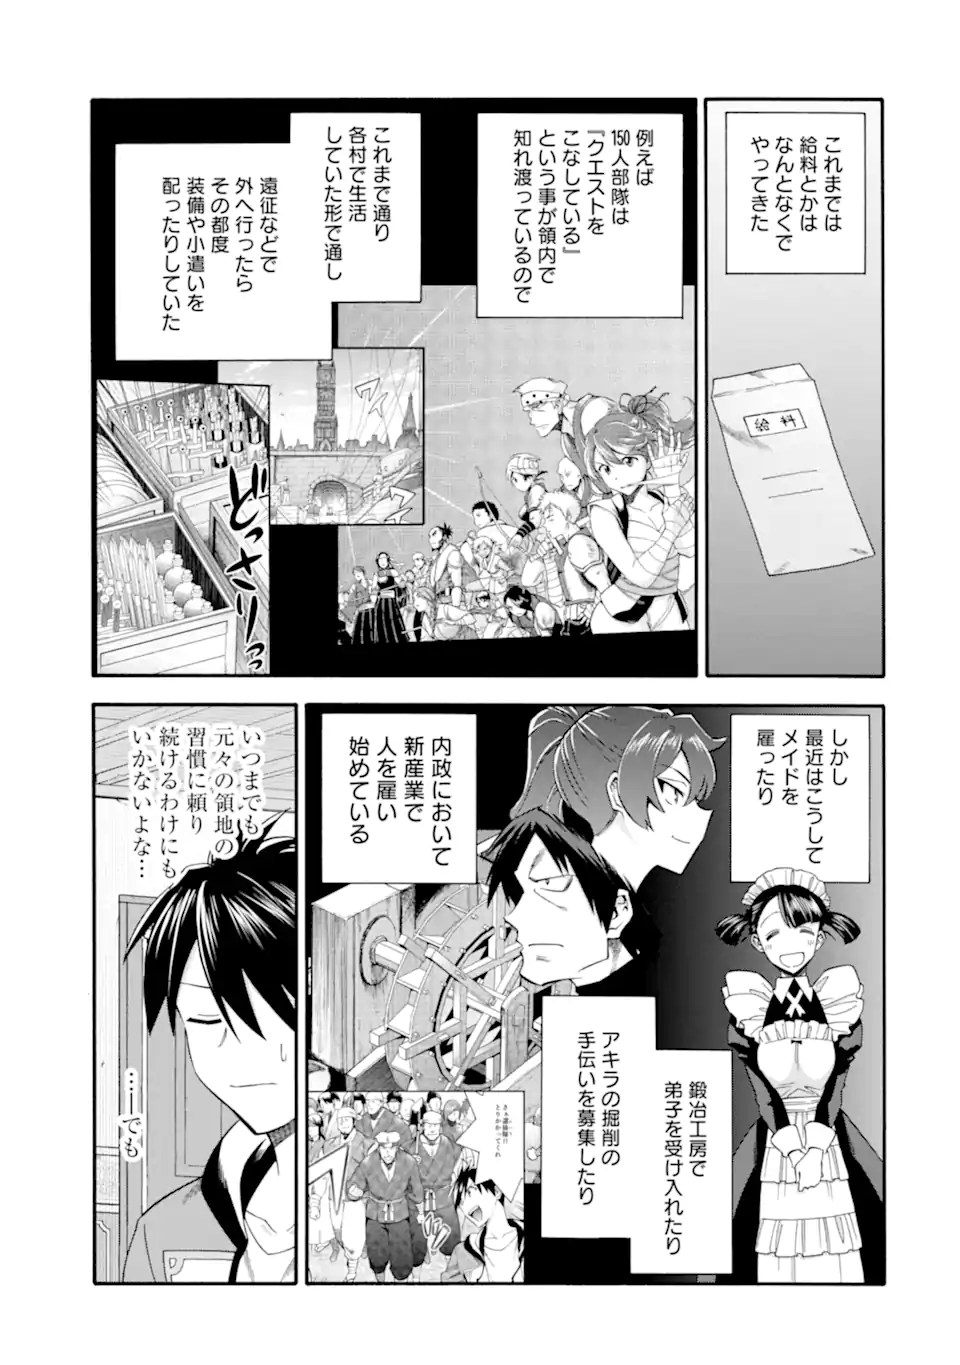 Ikusei Skill wa Mou Iranai to Yuusha Party o Kaiko Sareta no de, Taishoku Kingawari ni Moratta “Ryouchi” o Tsuyoku Shitemiru - Chapter 39.2 - Page 3